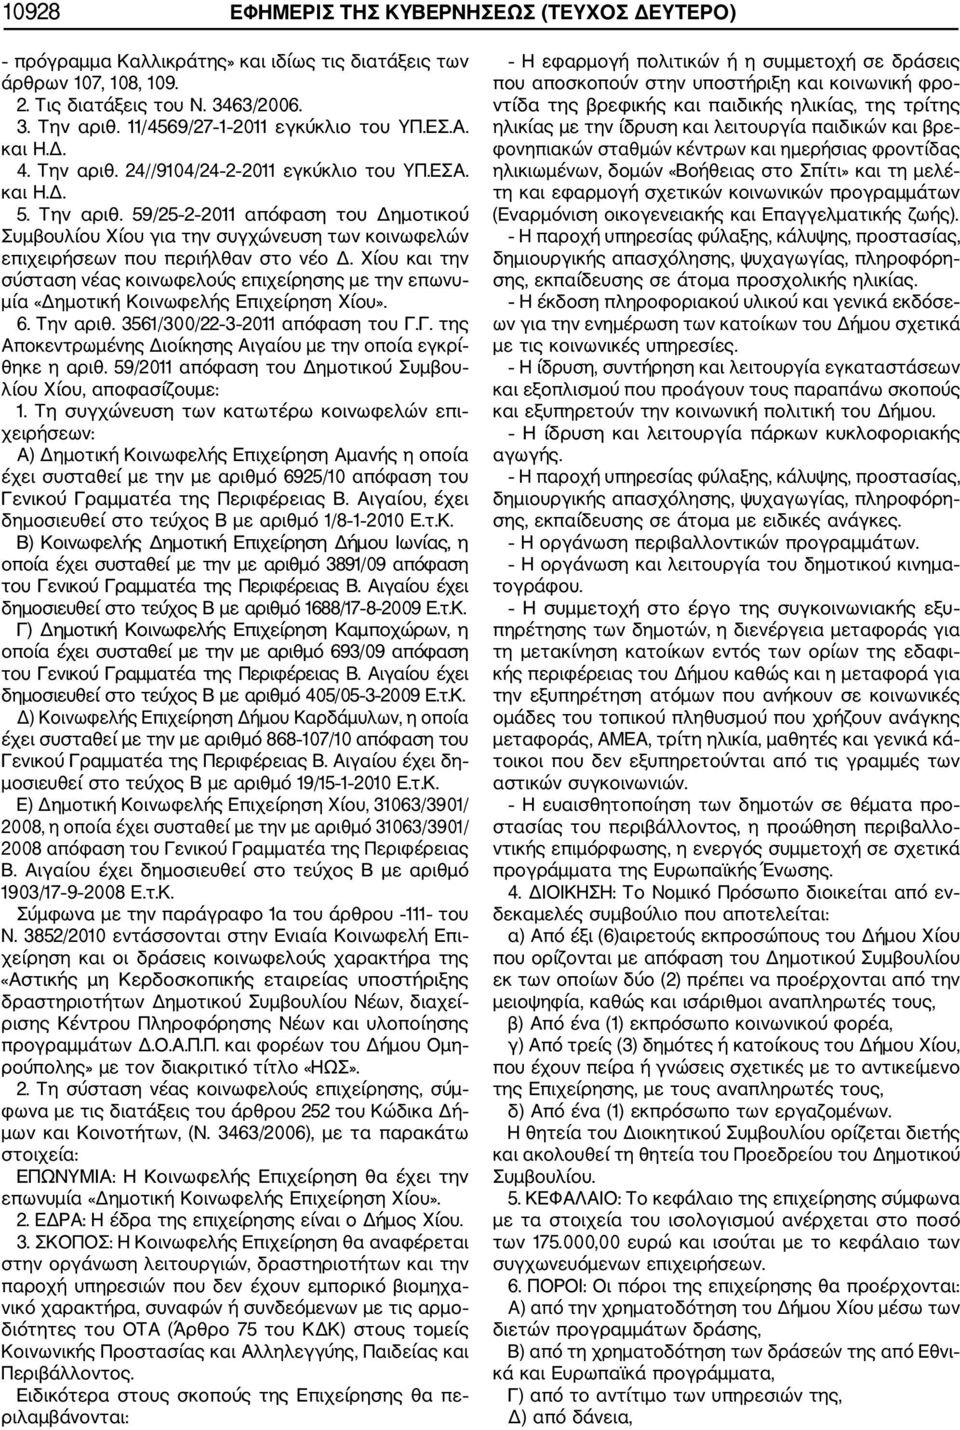 Χίου και την σύσταση νέας κοινωφελούς επιχείρησης με την επωνυ μία «Δημοτική Κοινωφελής Επιχείρηση Χίου». 6. Την αριθ. 3561/300/22 3 2011 απόφαση του Γ.